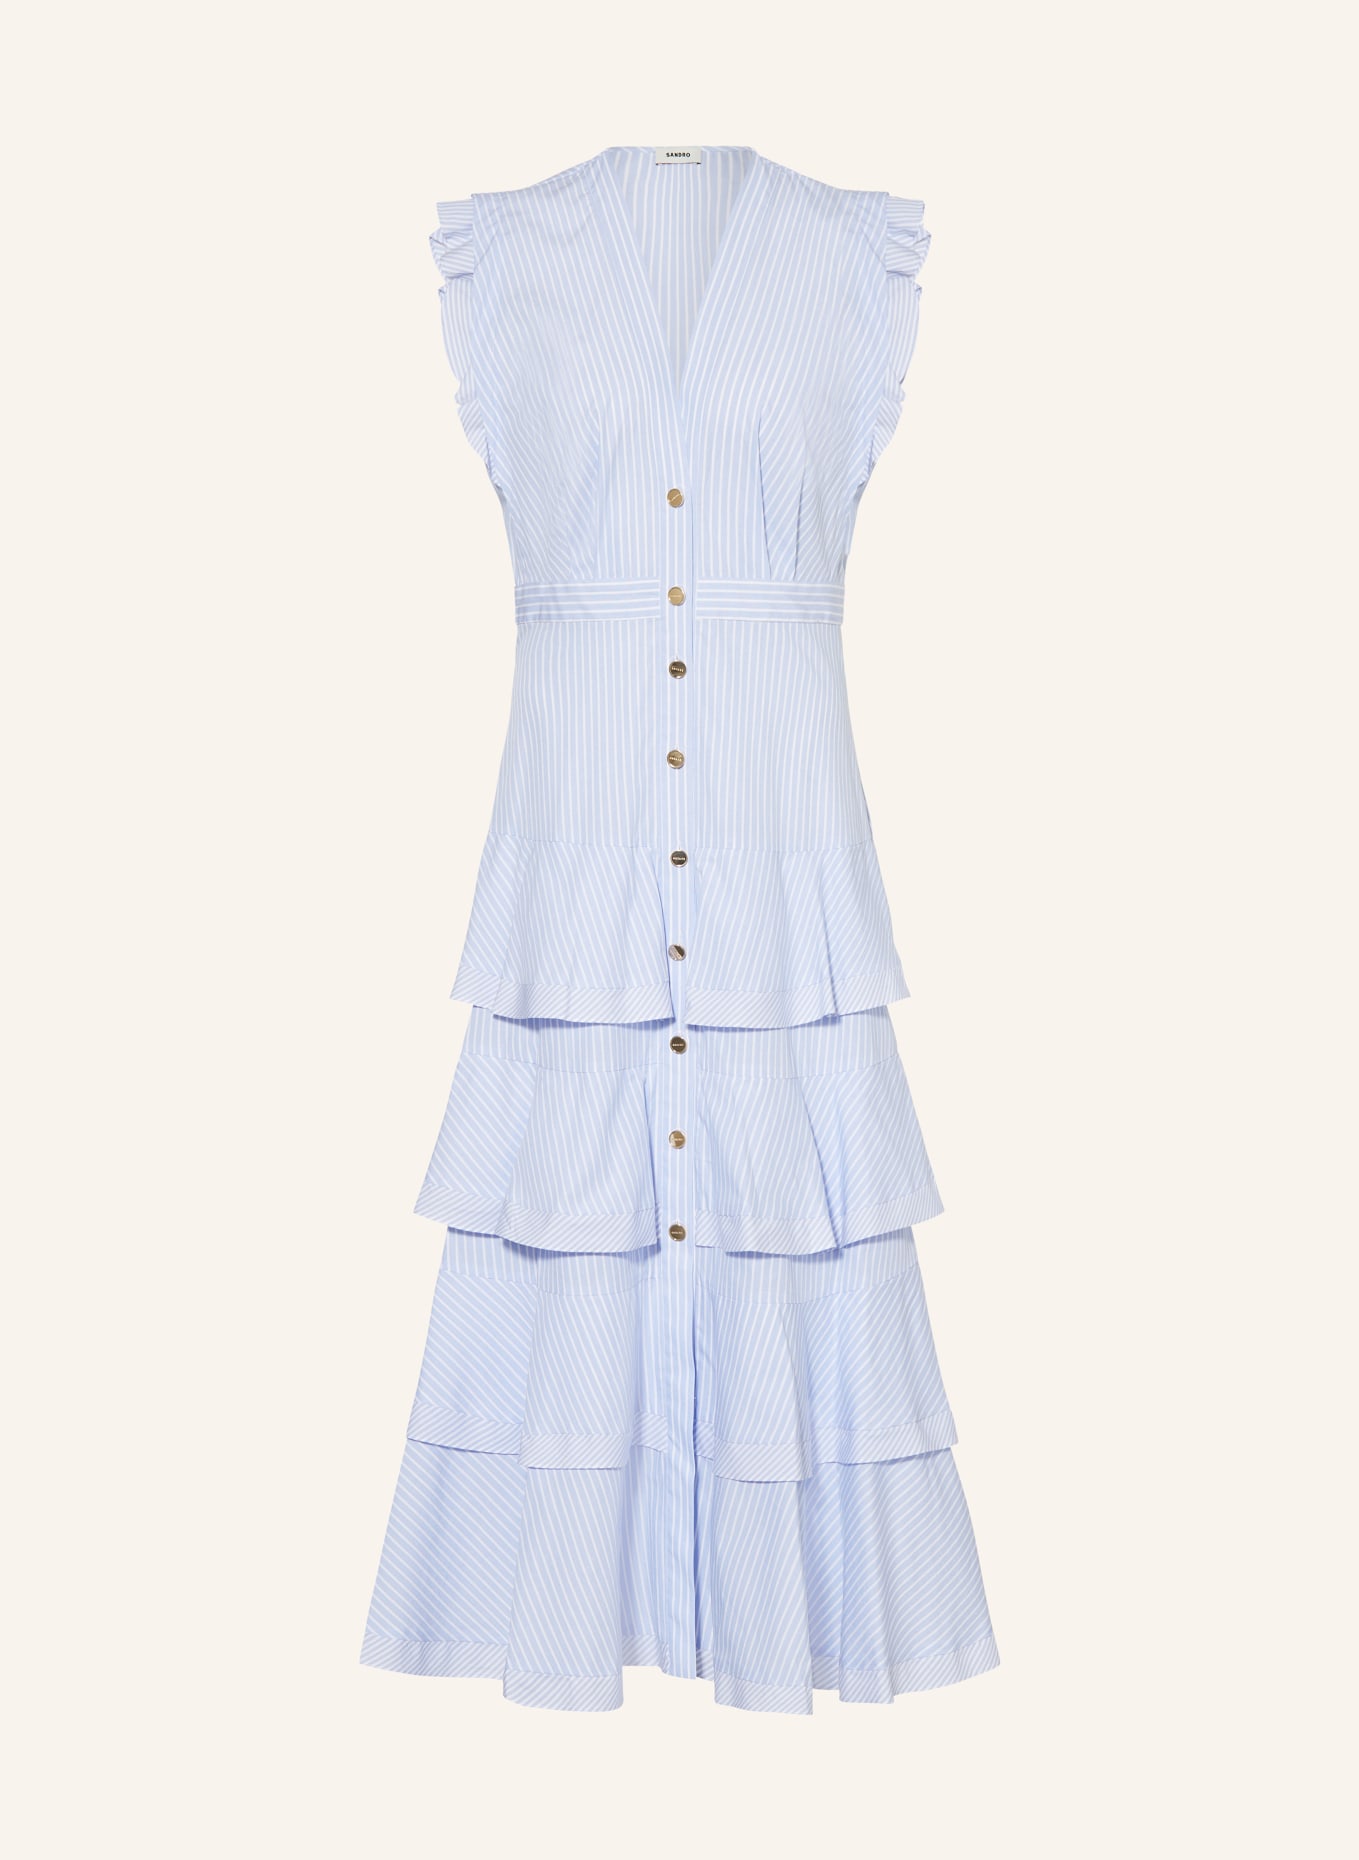 SANDRO Kleid mit Volants, Farbe: HELLBLAU/ WEISS (Bild 1)